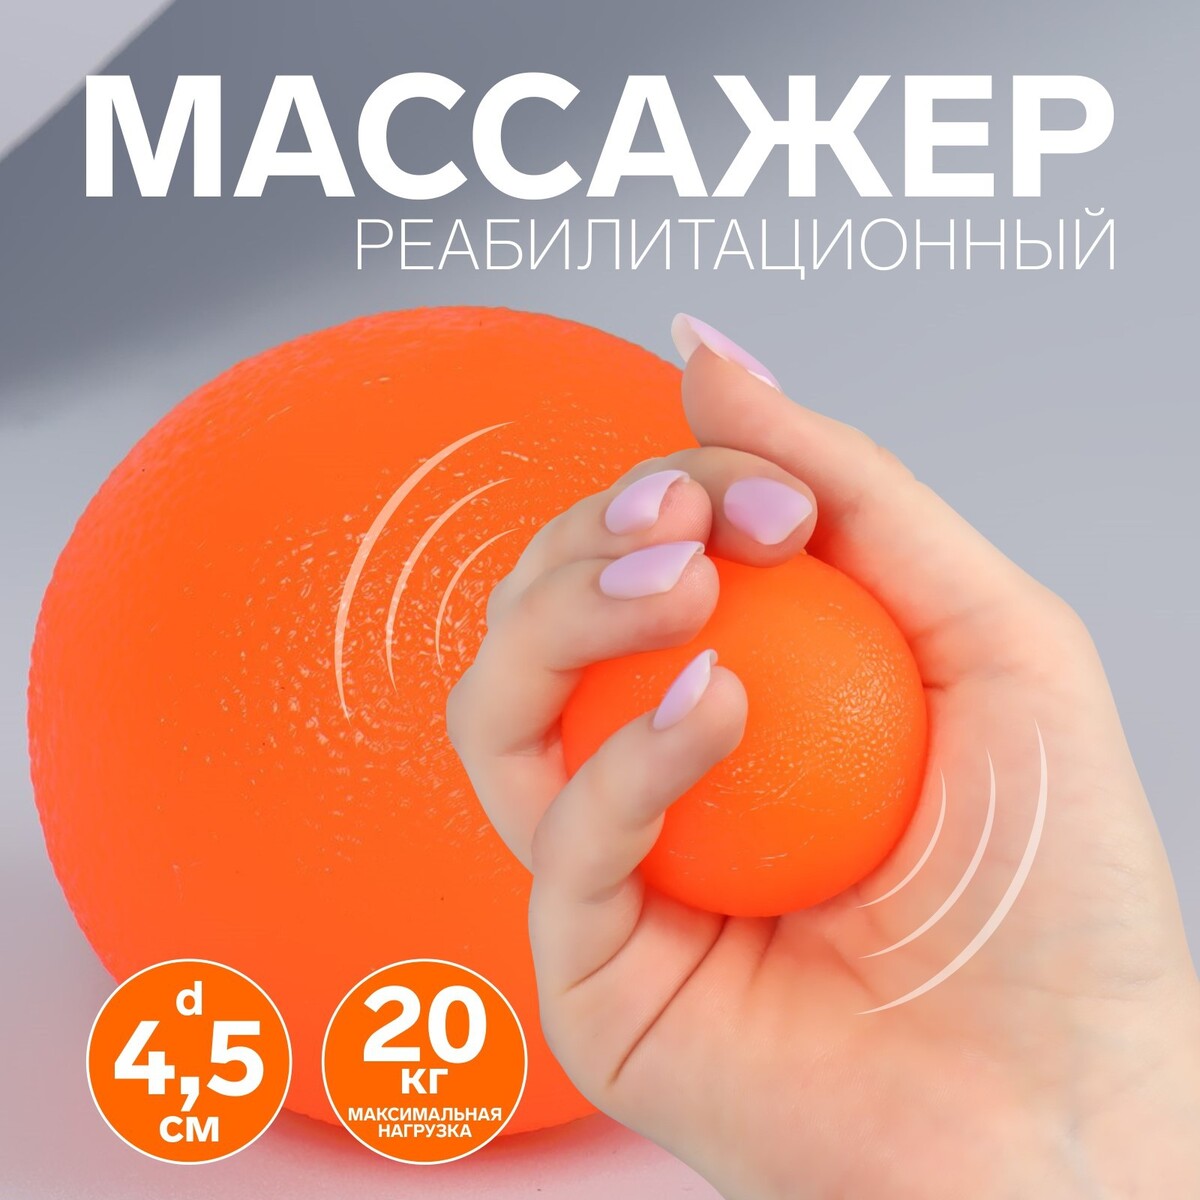 Массажер реабилитационный, 20 кг, d 4,5 см, цвет оранжевый массажер ручной роликовый 2 sportex 154 021 e40375 оранжевый